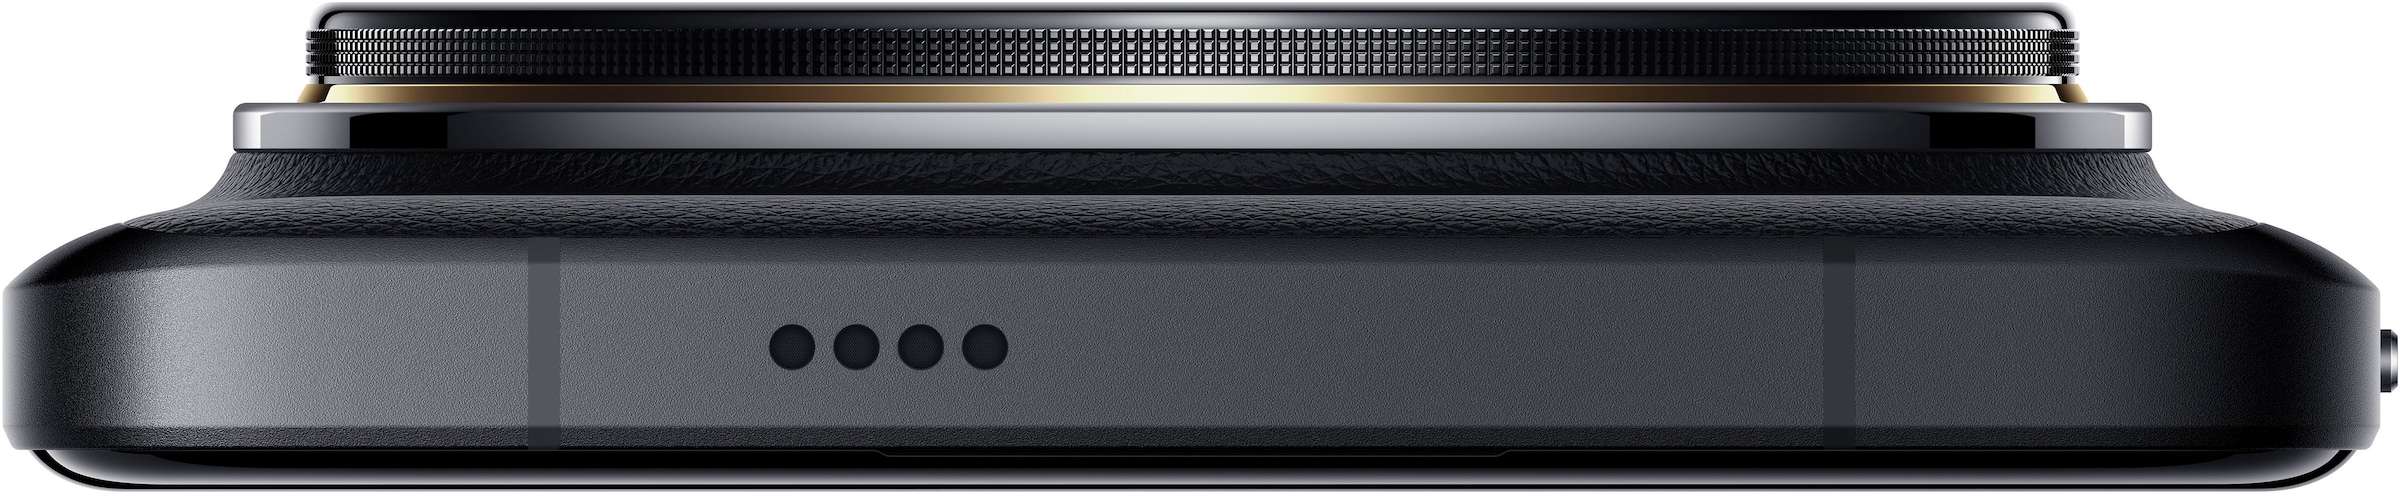 Xiaomi Smartphone »14 Ultra 512GB«, schwarz, 17,09 cm/6,73 Zoll, 512 GB Speicherplatz, 50 MP Kamera